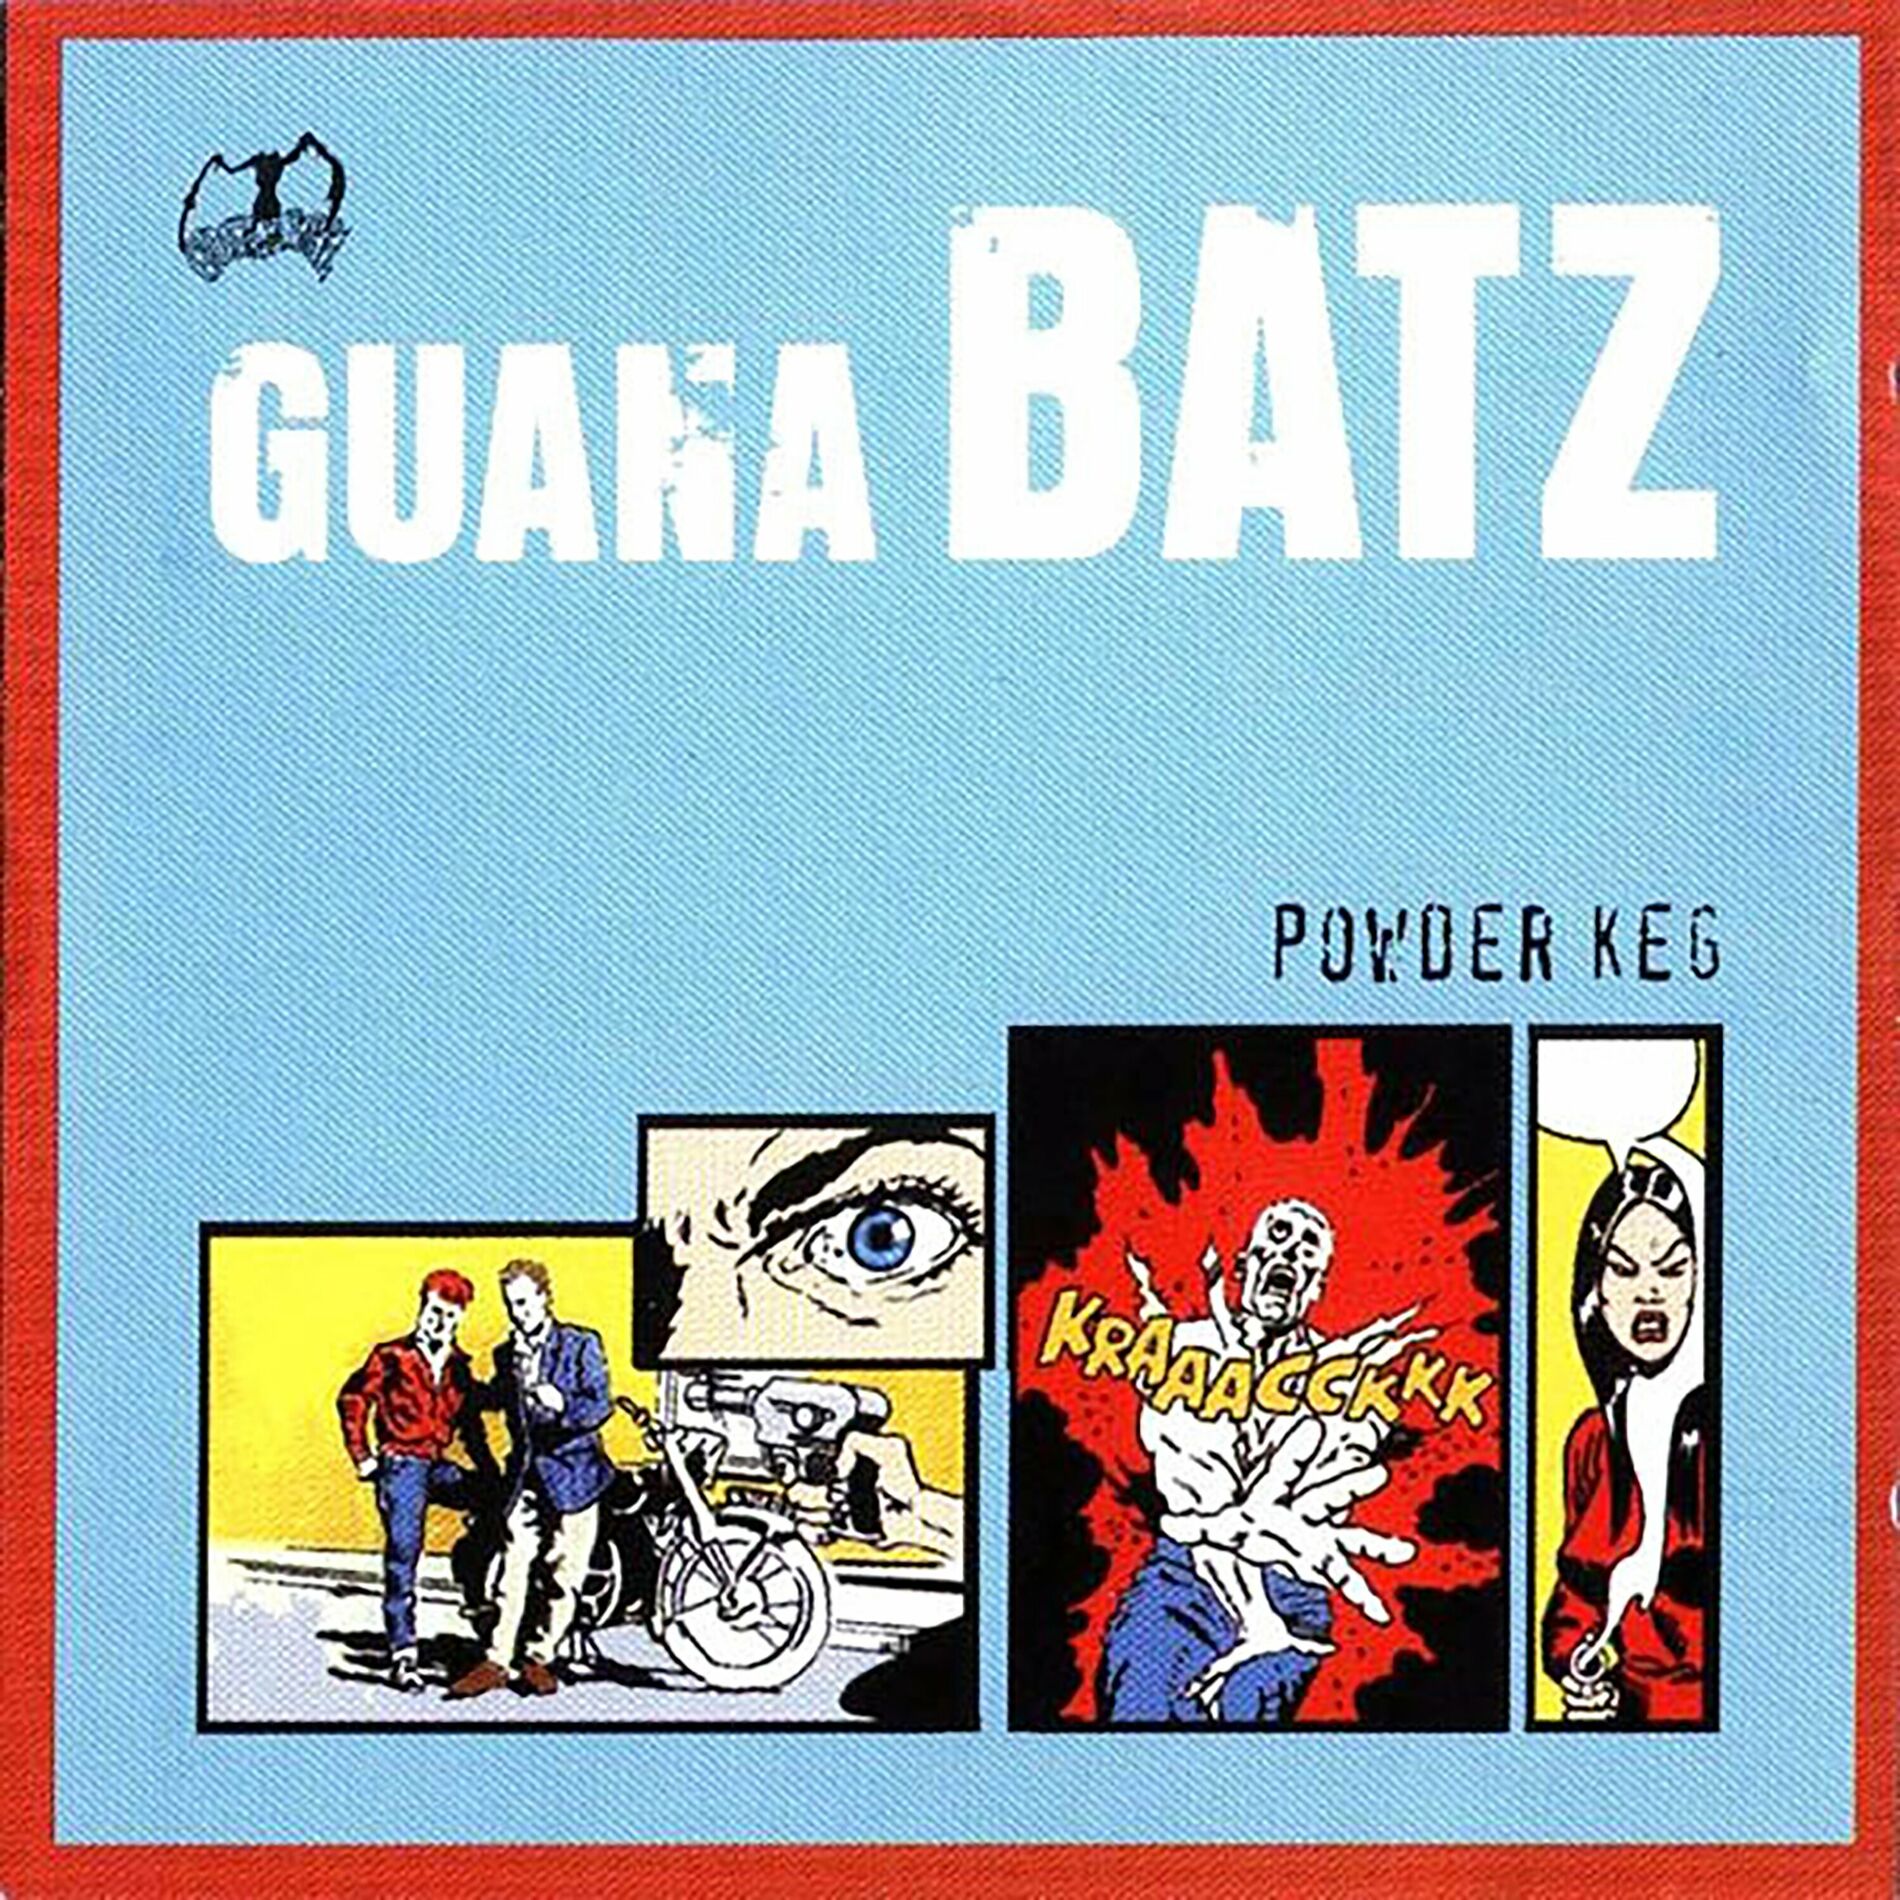 Guana Batz: albums